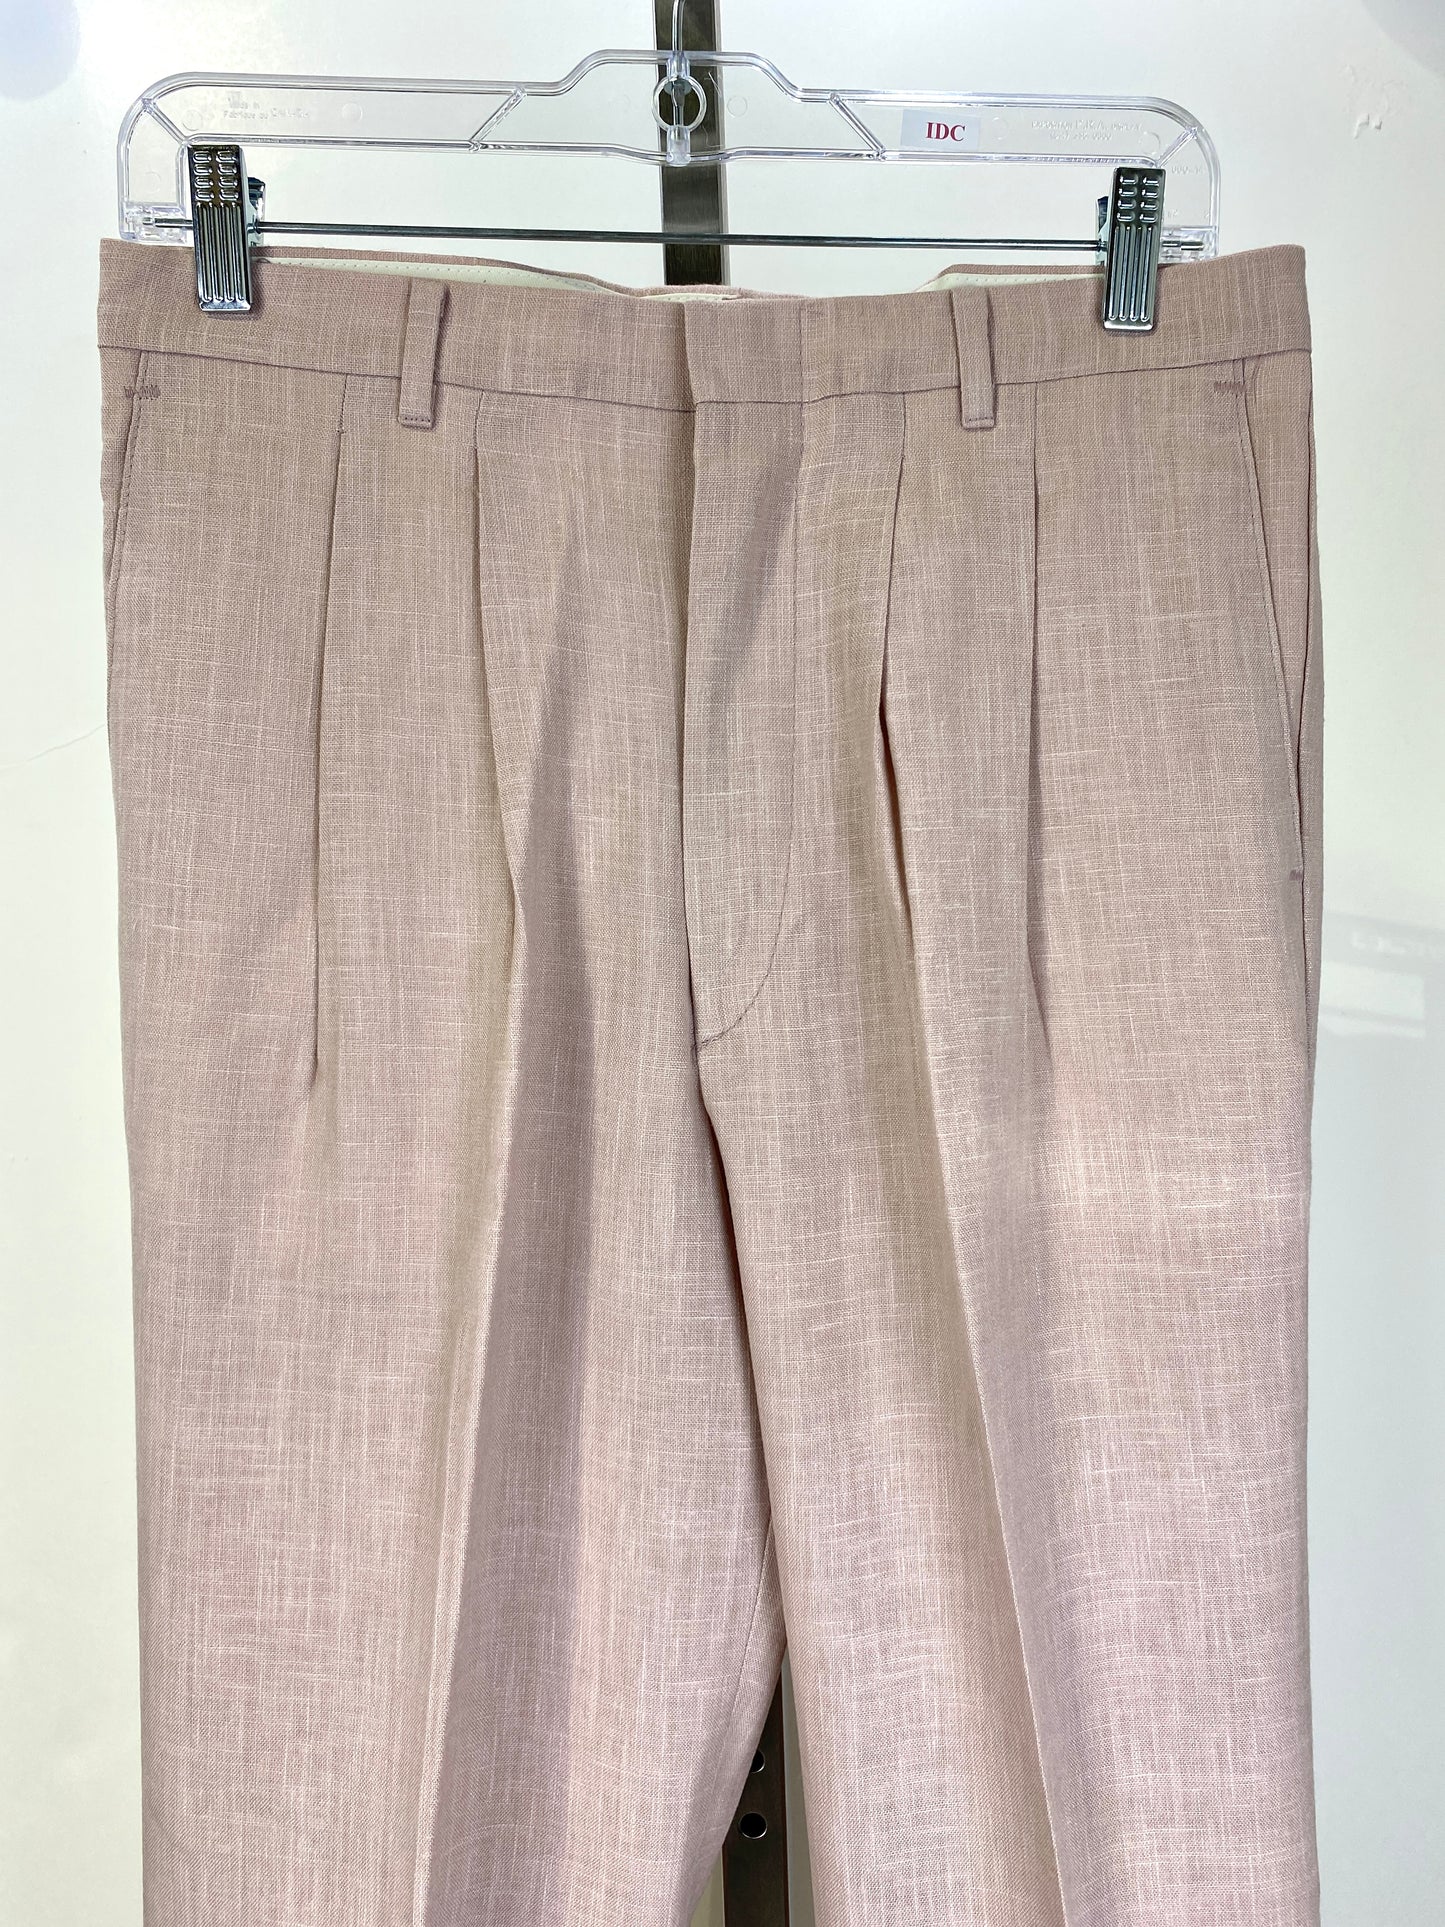 Vintage 1970s Deadstock Dee Cee Slacks, Men's Pink Linen-Look Pants, NOS